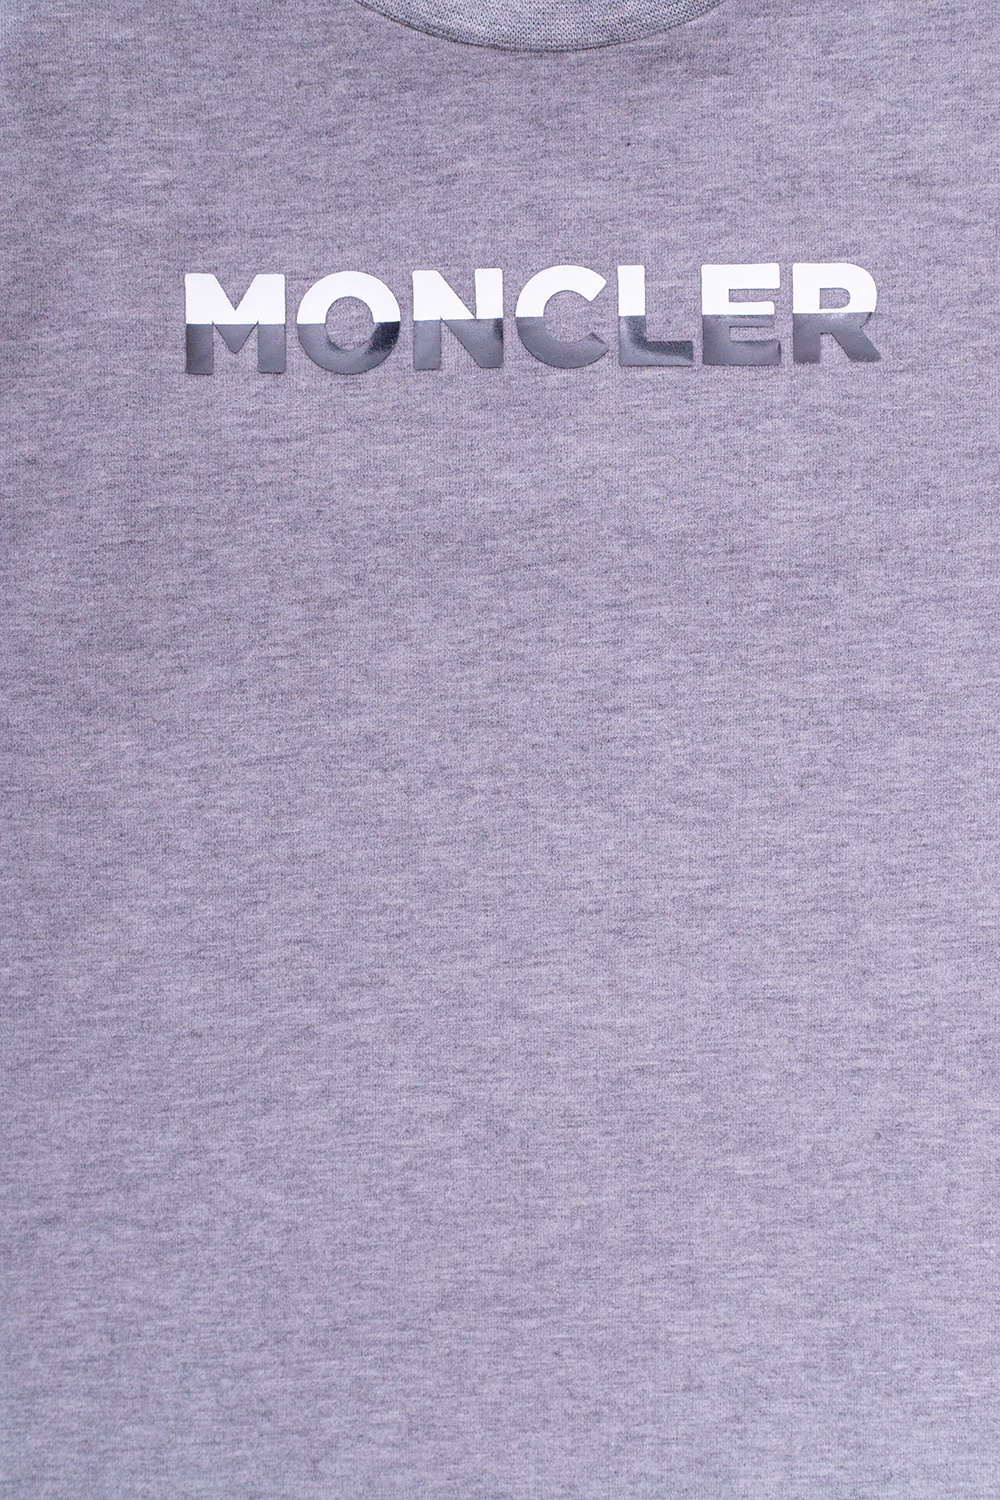 Moncler Enfant office-accessories accessories belts shoe-care Sweatshirts Hoodies